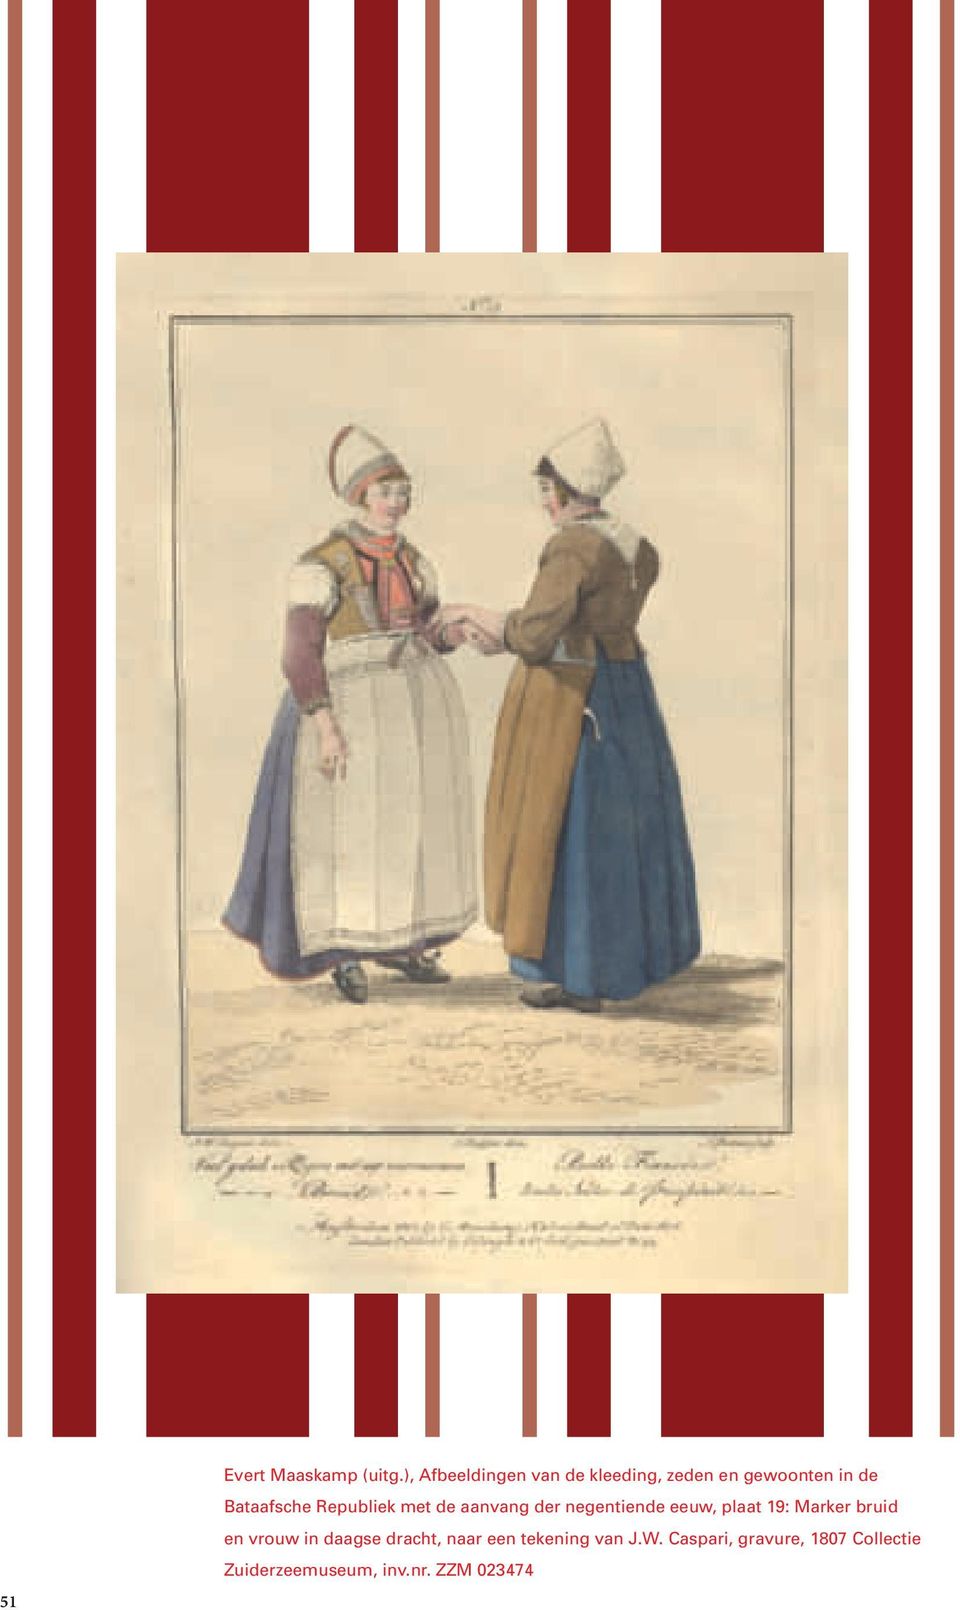 Republiek met de aanvang der negentiende eeuw, plaat 19: Marker bruid